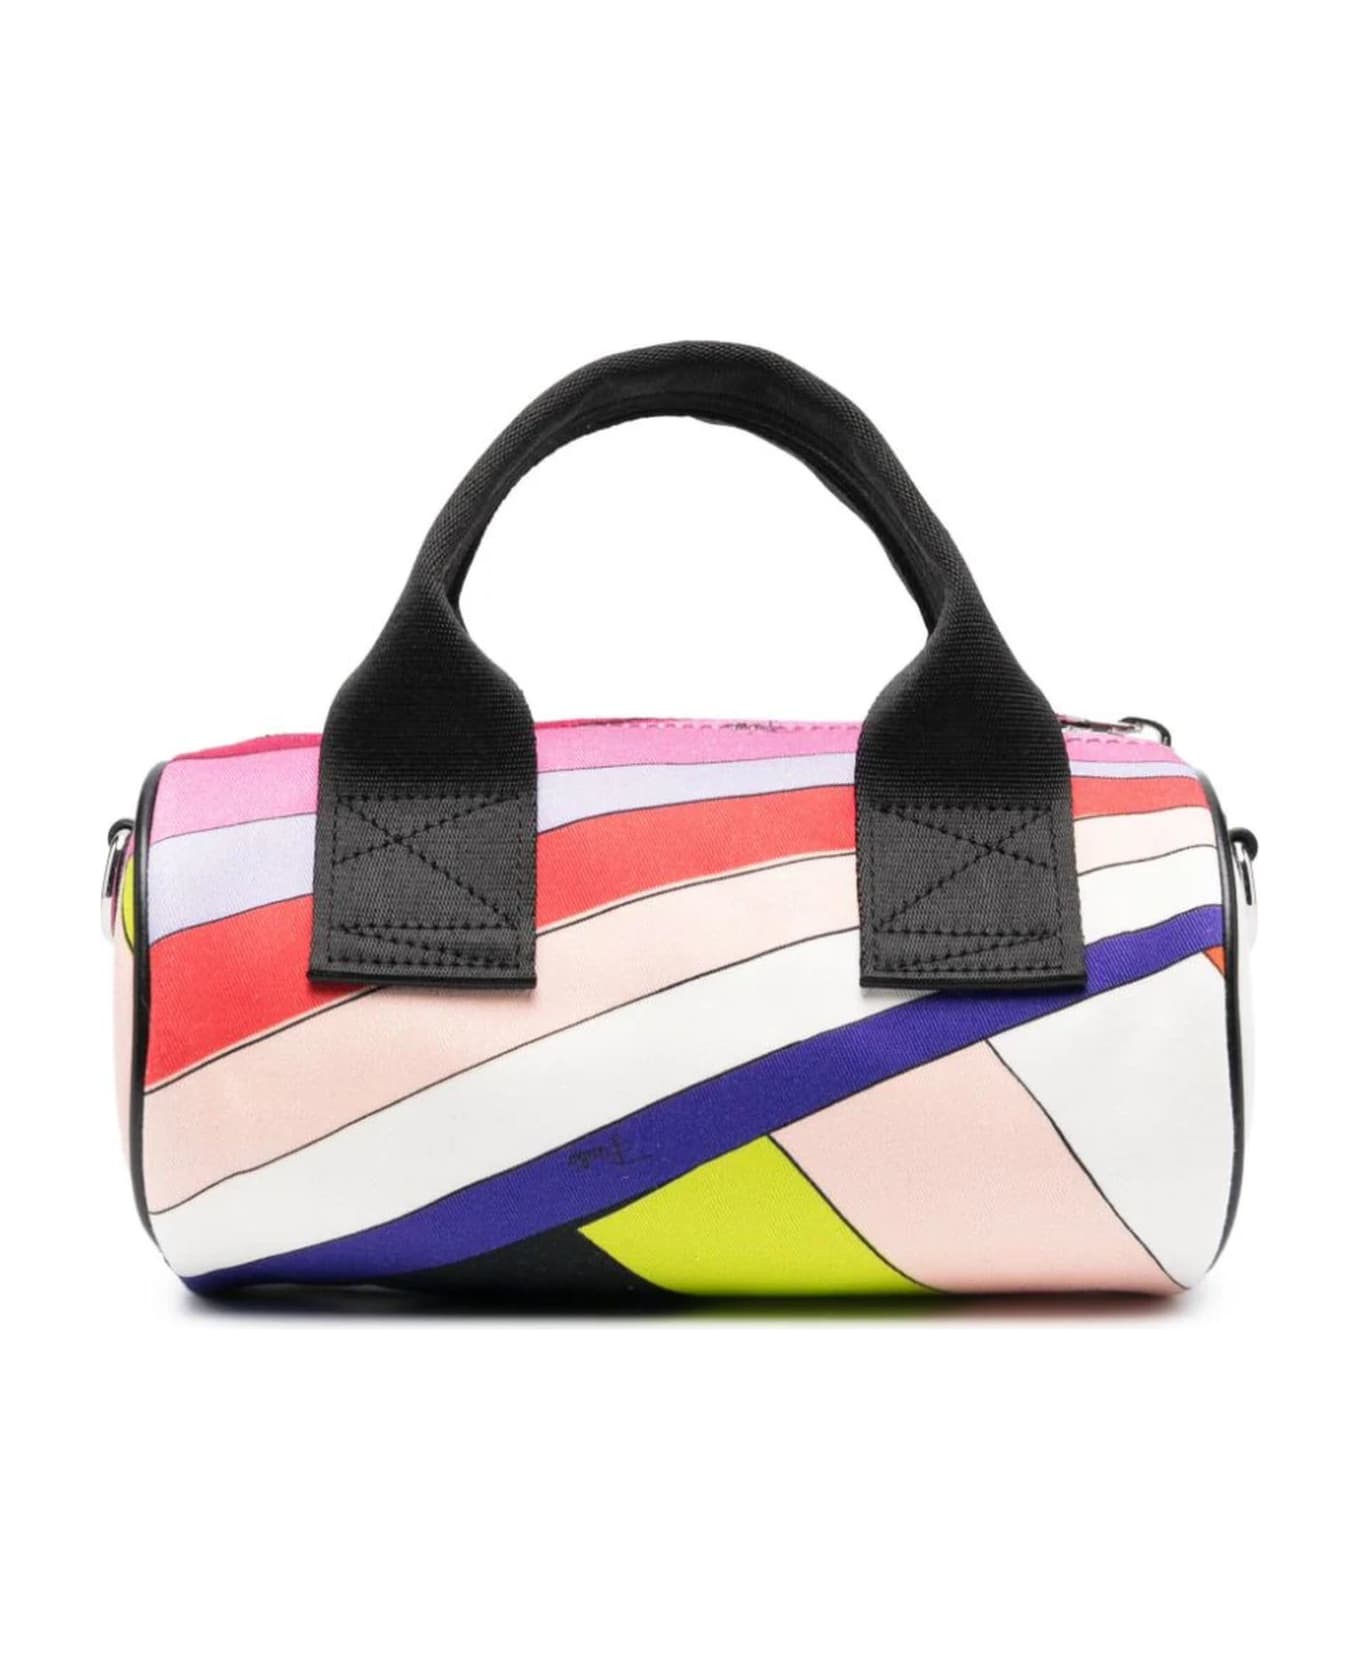 Pucci Multicolor Cotton Bag - Multicolor